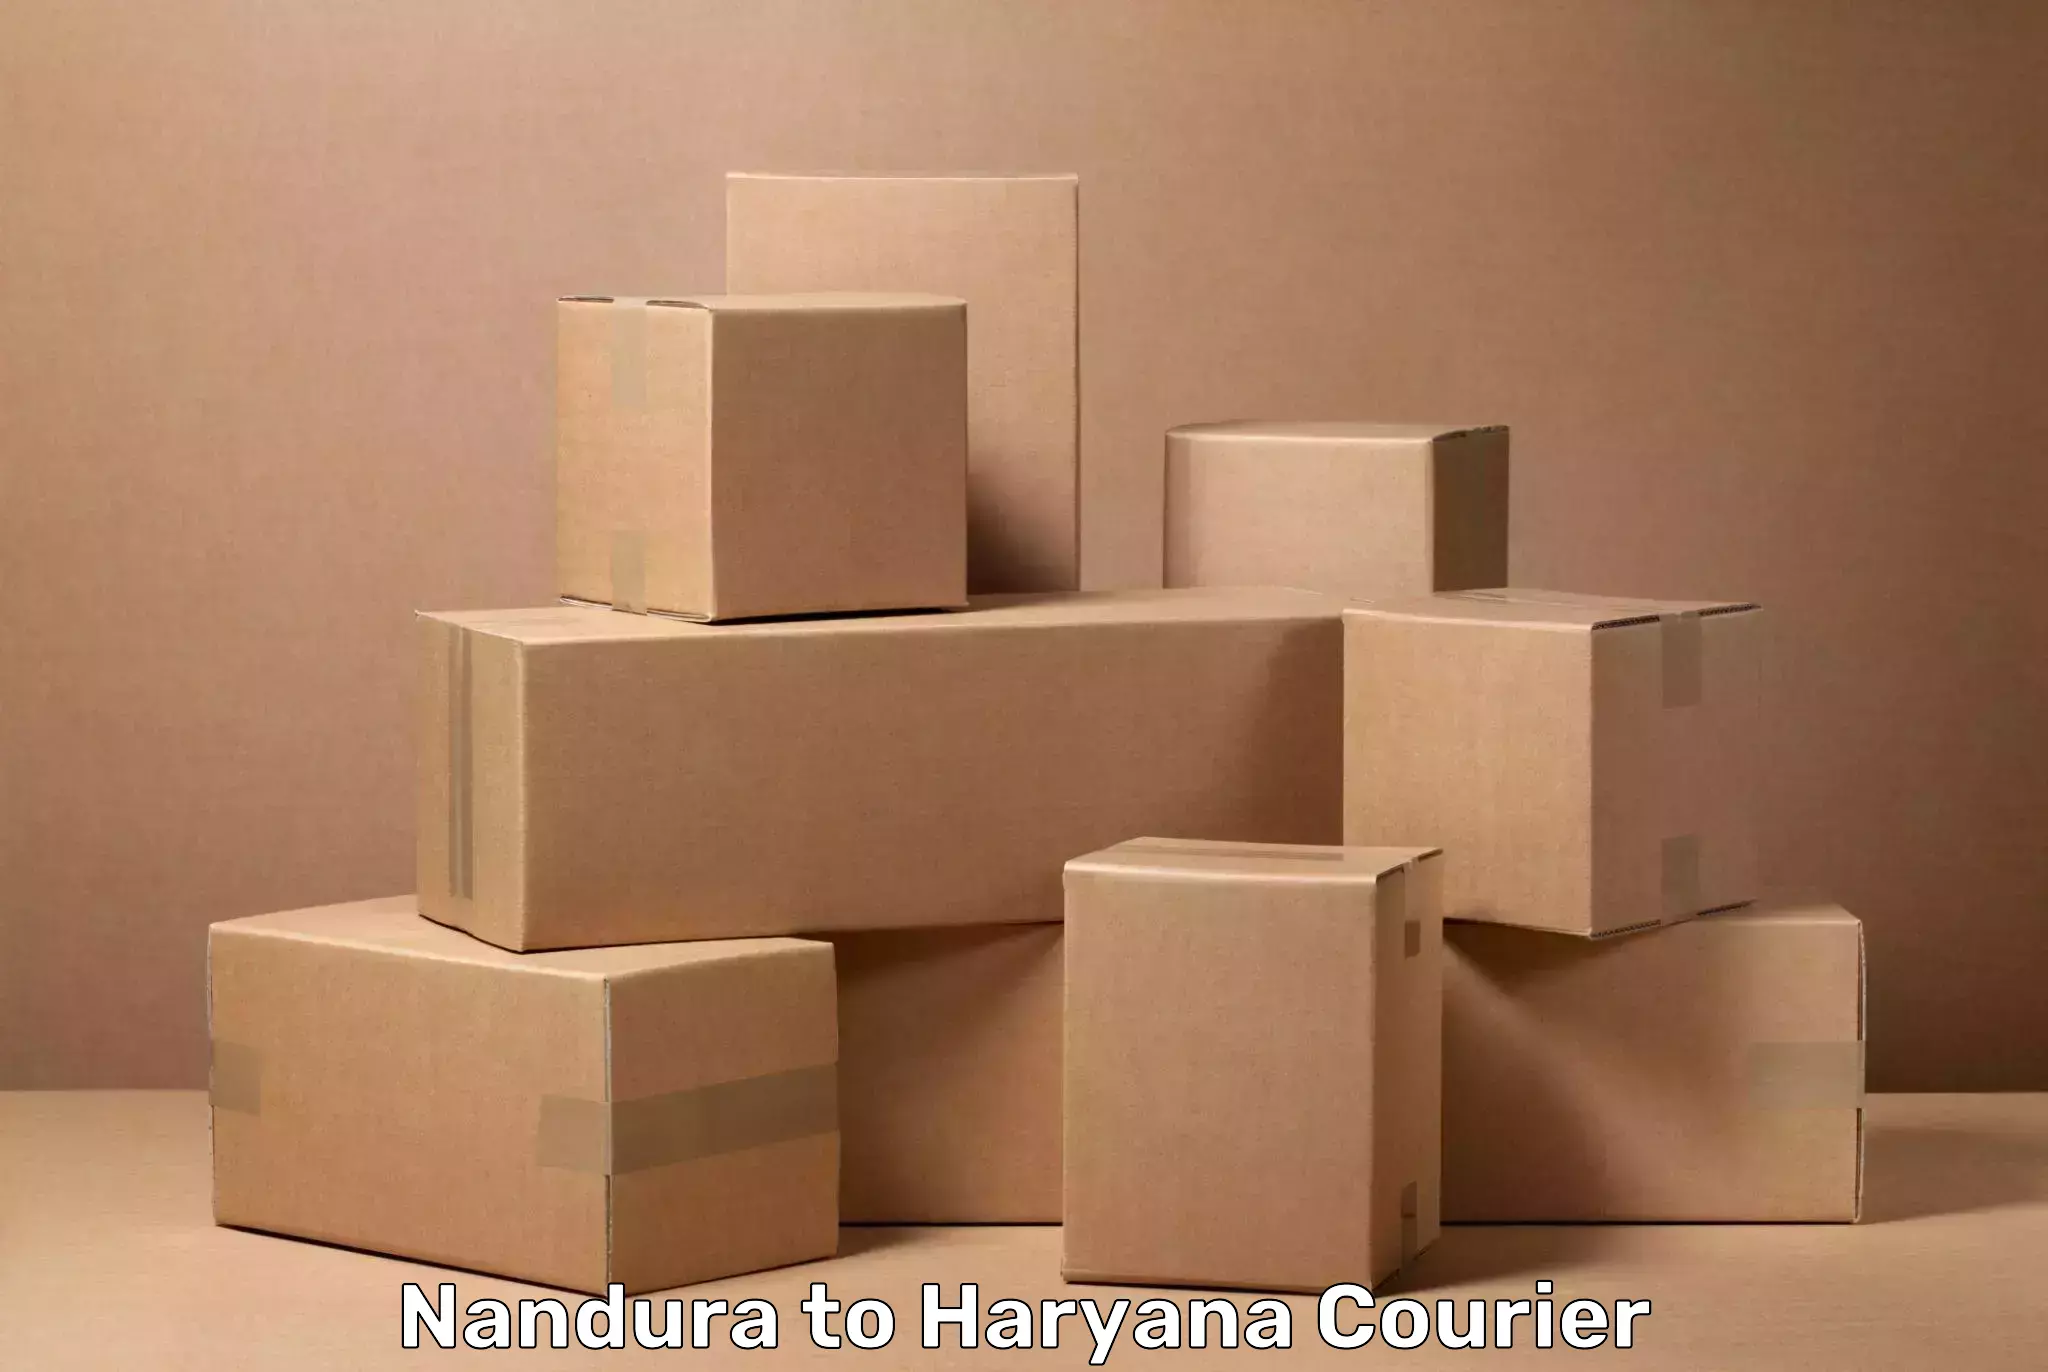 Luggage transport solutions Nandura to Narwana